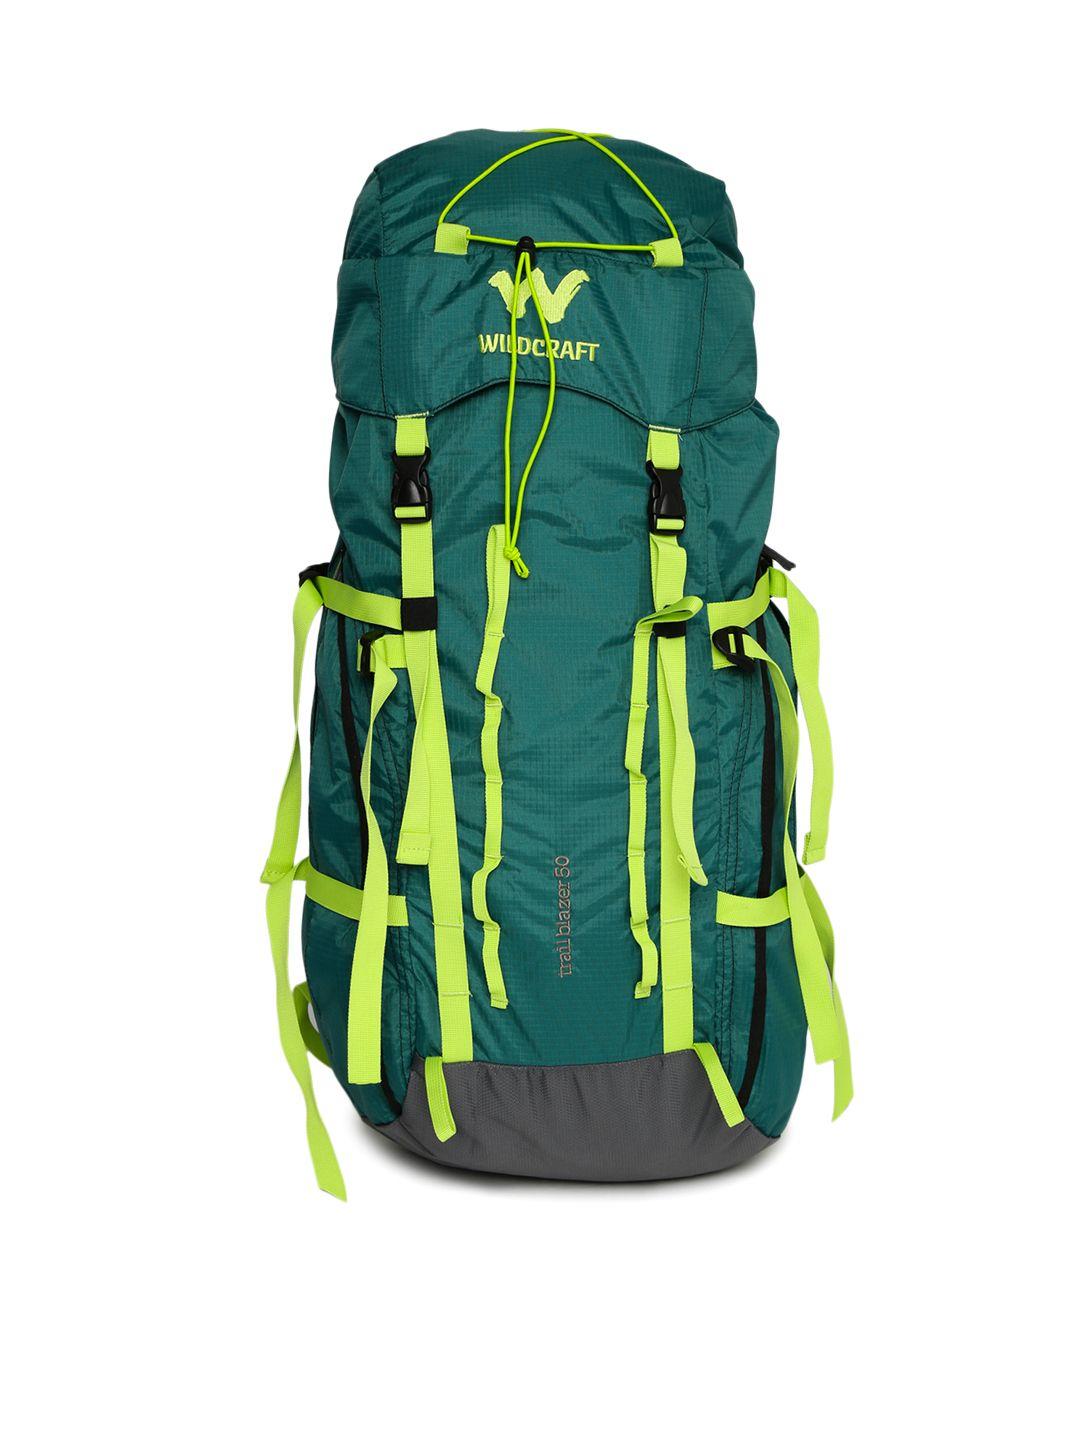 wildcraft unisex green trailblazer rucksack